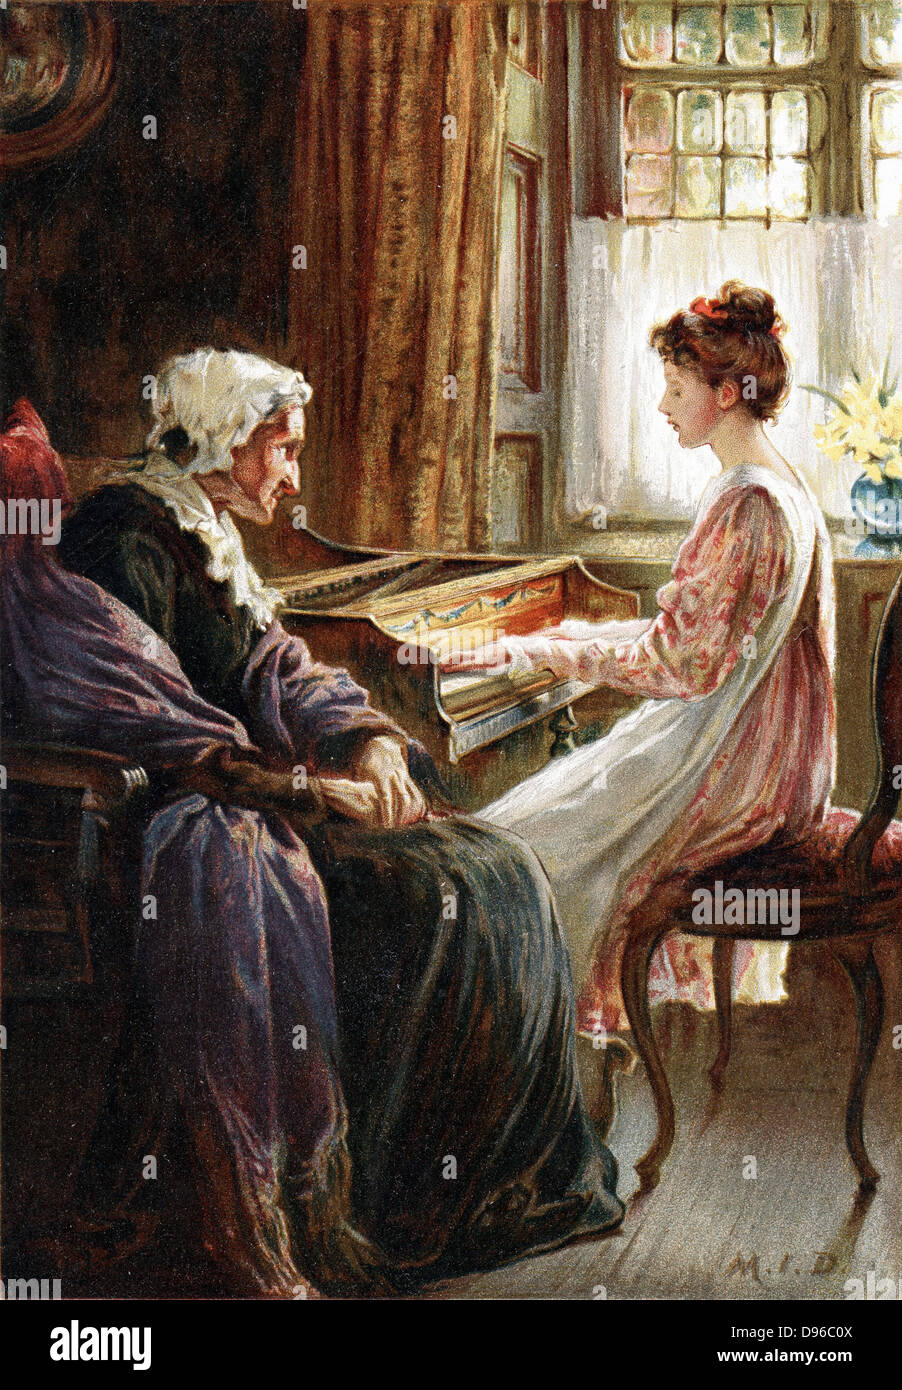 Ihre Abend Hymne. Chromolithograph nach dem Lackieren von der englischen Künstlerin Margaret Isabel Dicksee (1858-1903), veröffentlicht 1892. Junges Mädchen spielt Keyboard Musik (Cembalo?) zu Ihrem alten Großmutter. Stockfoto